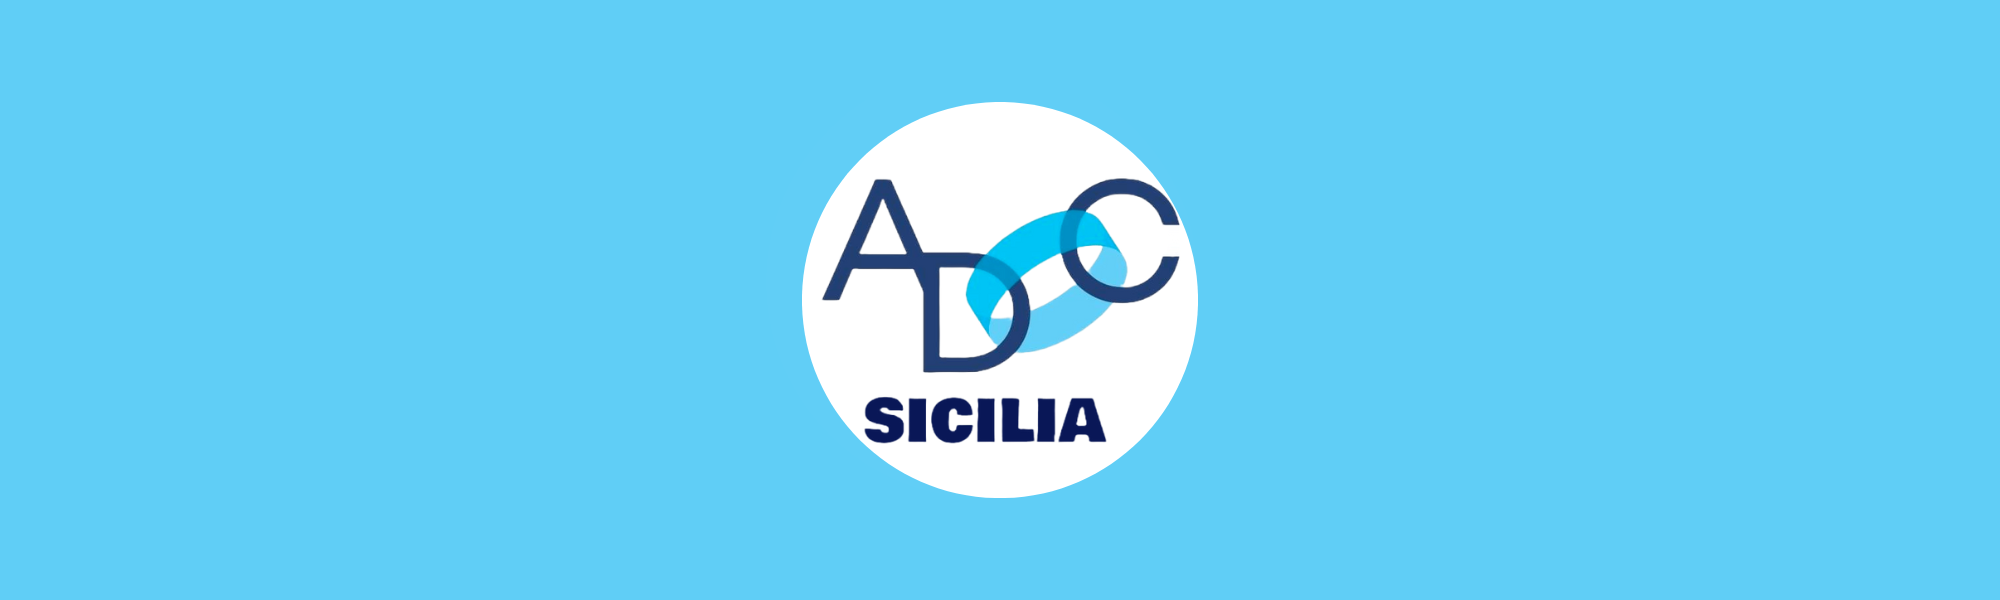 ADOC Sicilia